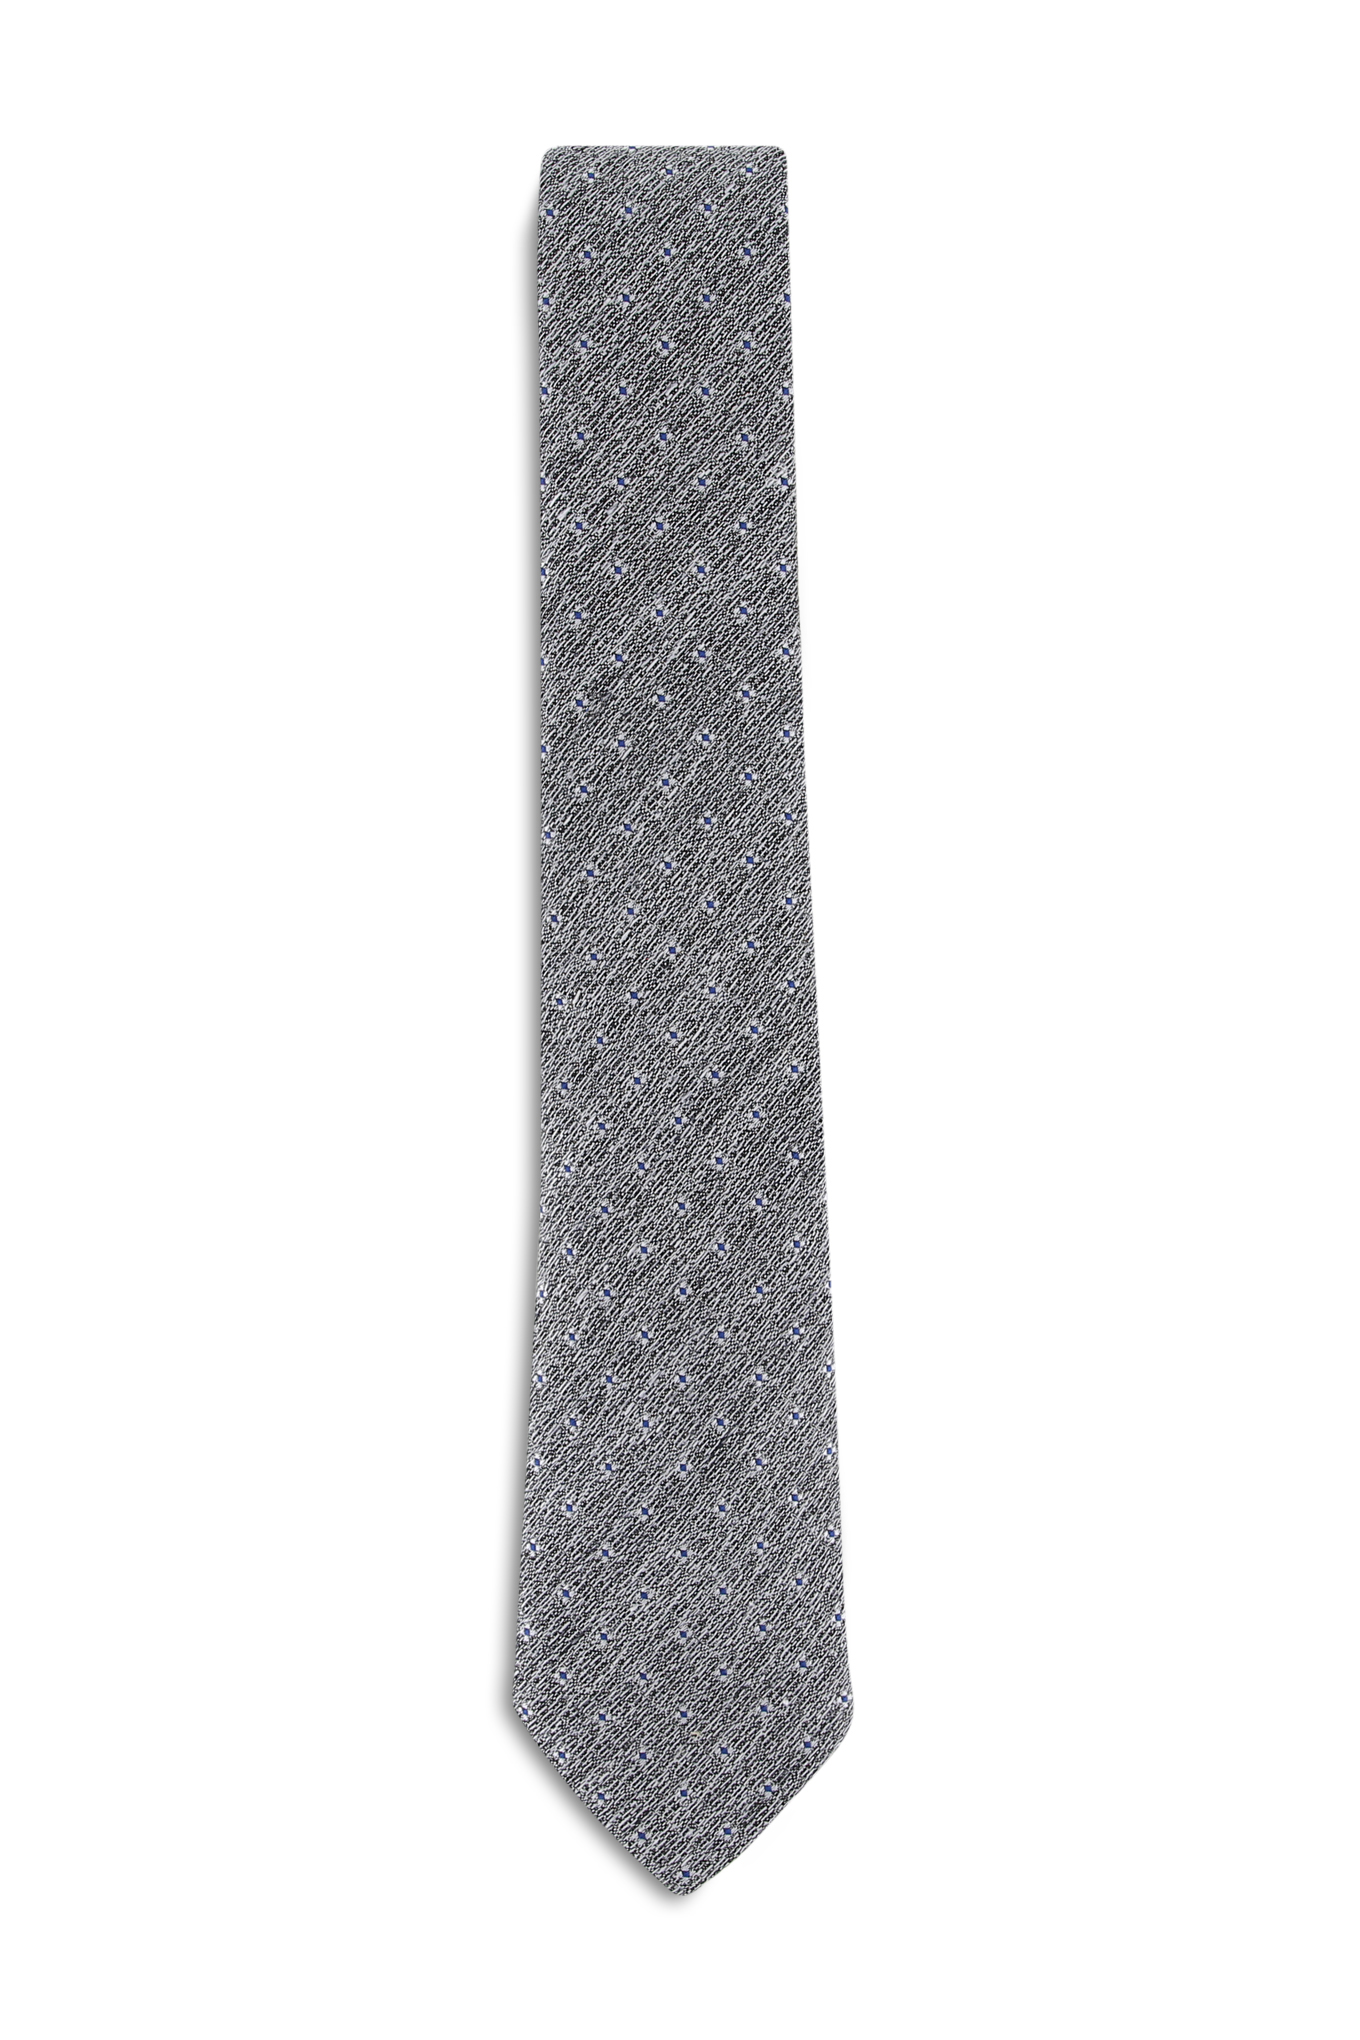 Tie Grey Formal Man